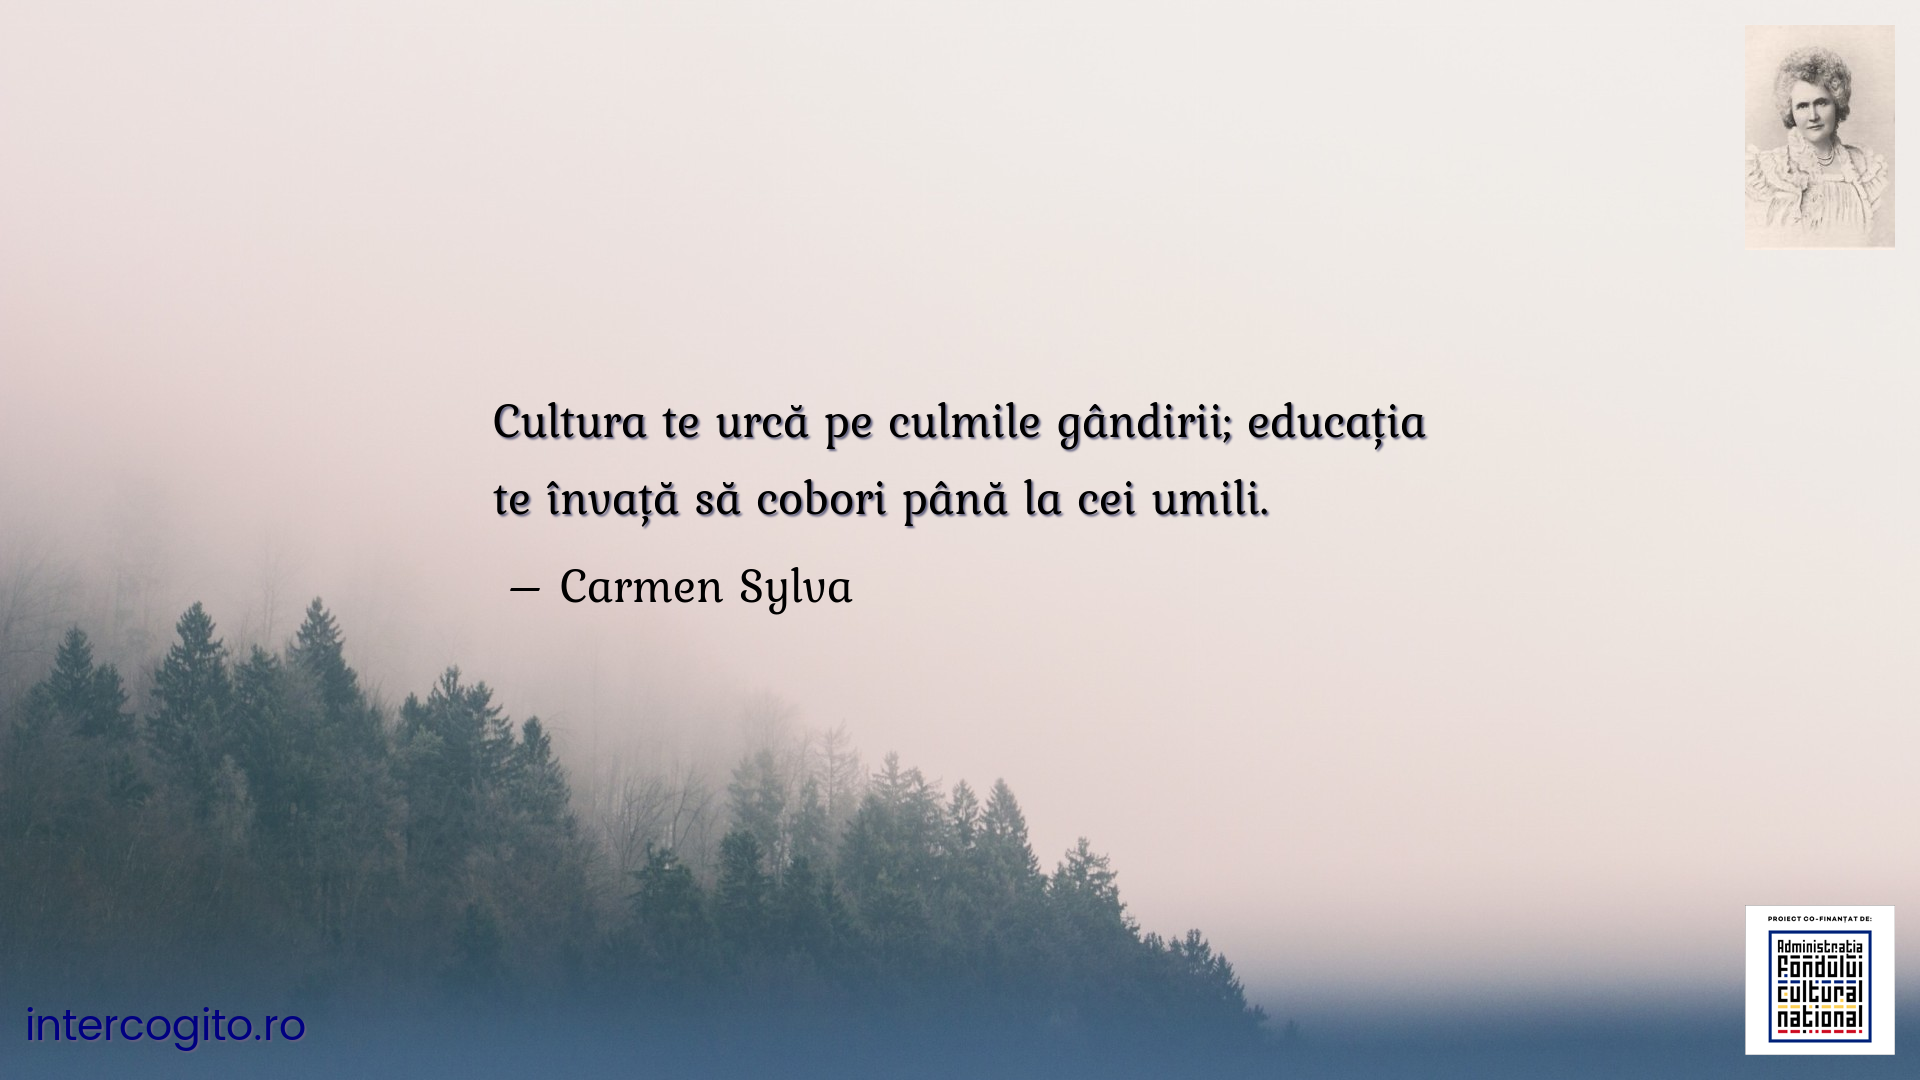 Cultura te urcă pe culmile gândirii; educația te învață să cobori până la cei umili.